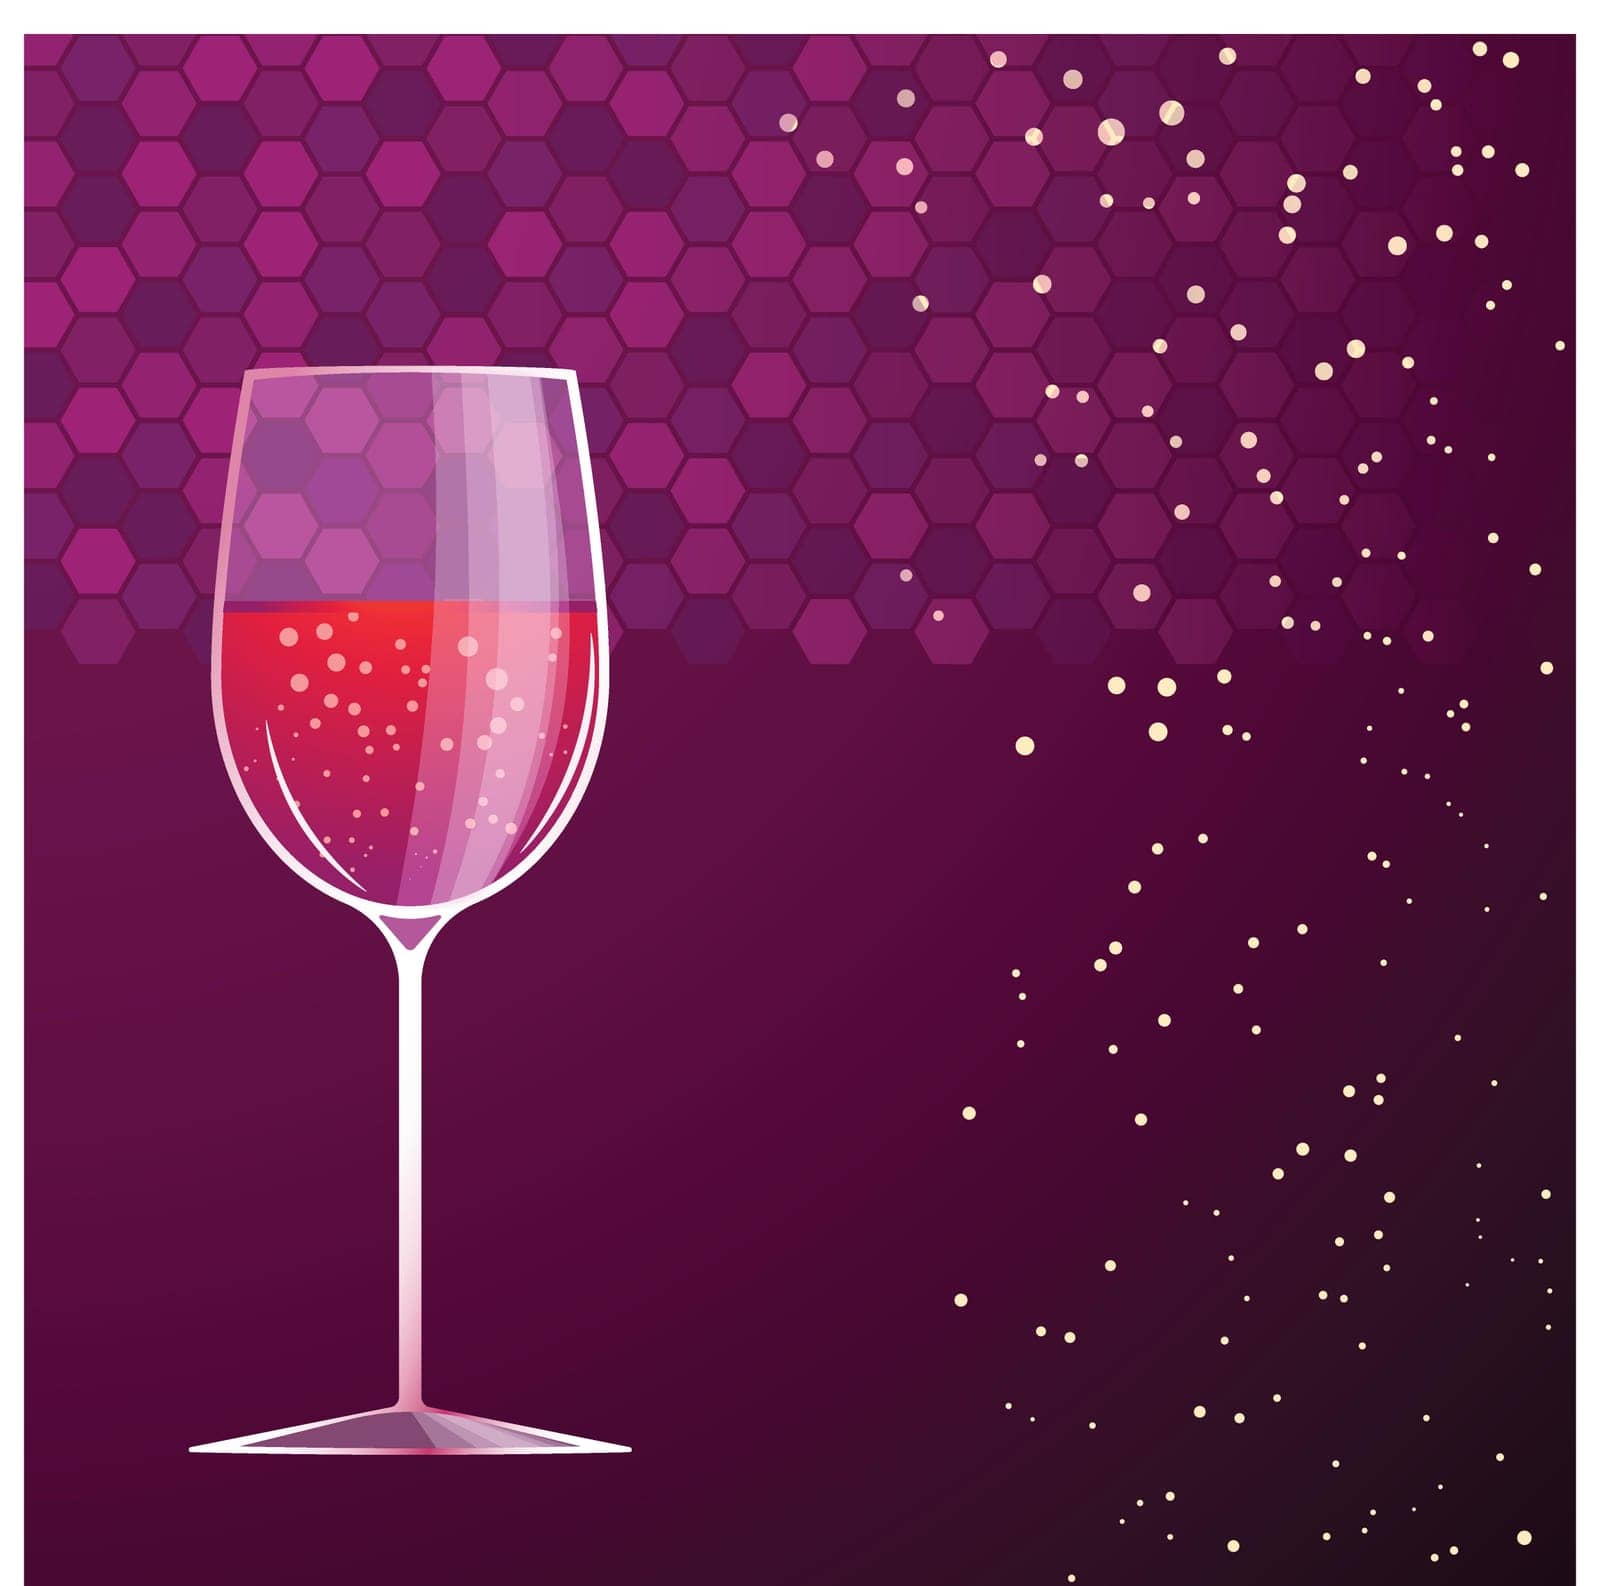 illustration of glass of red vine on violet background